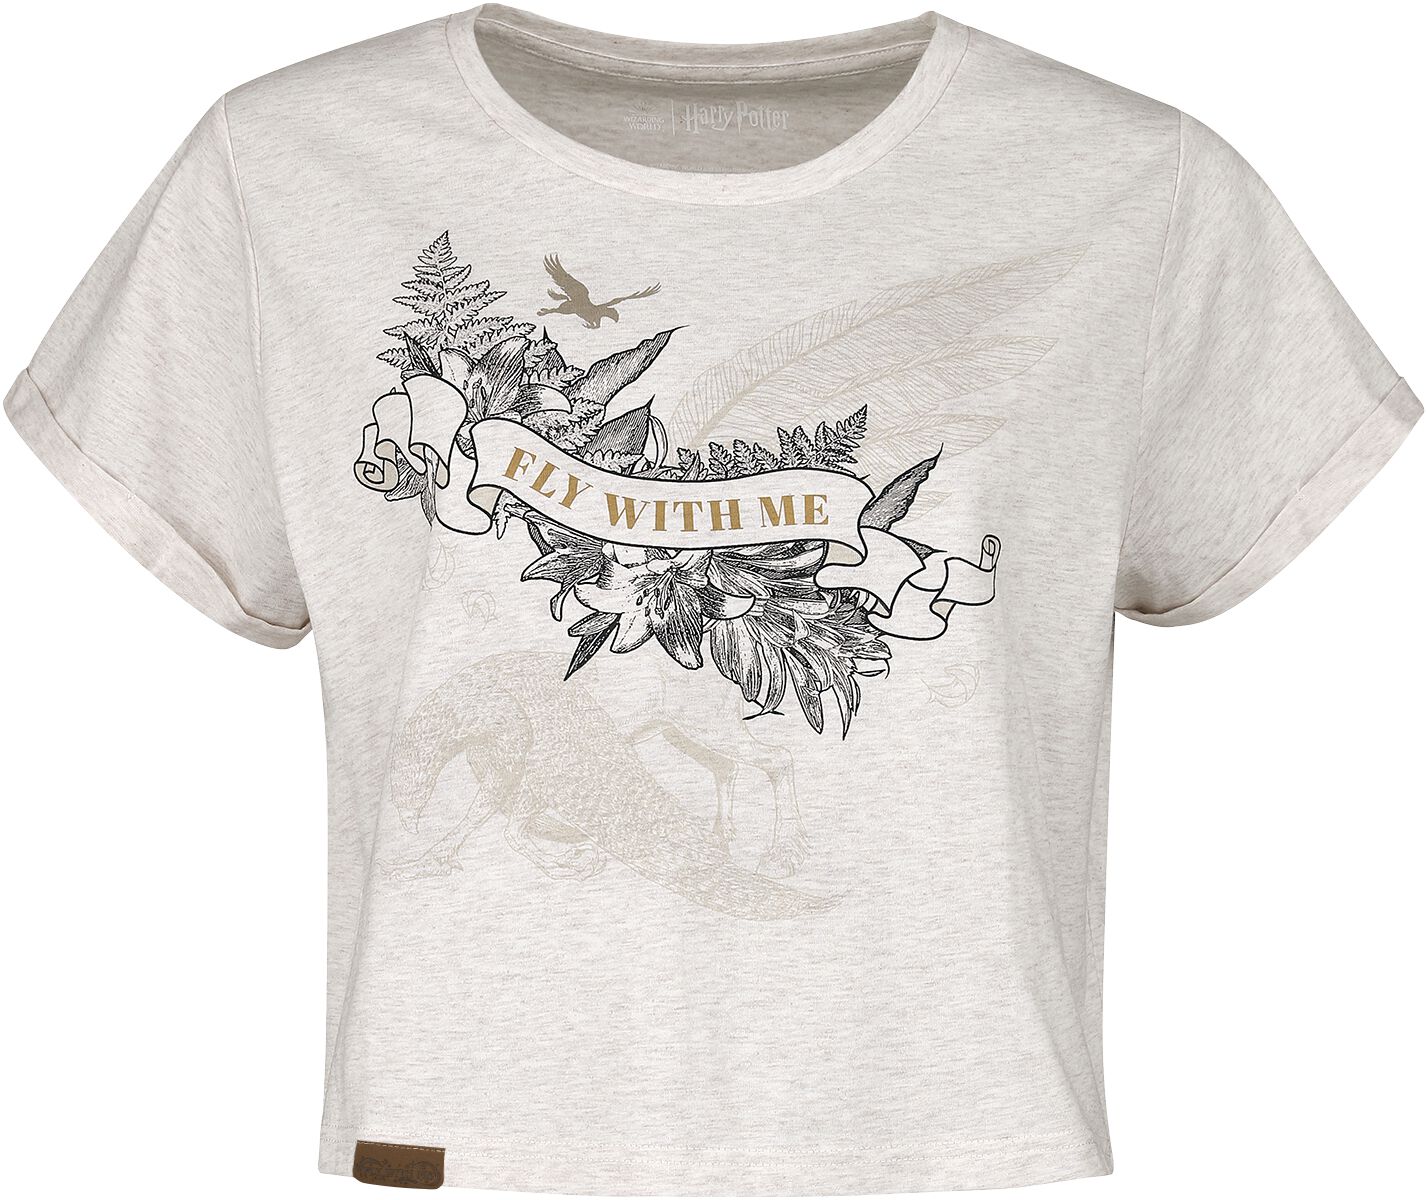 Harry Potter T-Shirt - Seidenschnabel (Buckbeak) - XL bis XXL - für Damen - Größe XXL - creme meliert  - EMP exklusives Merchandise!